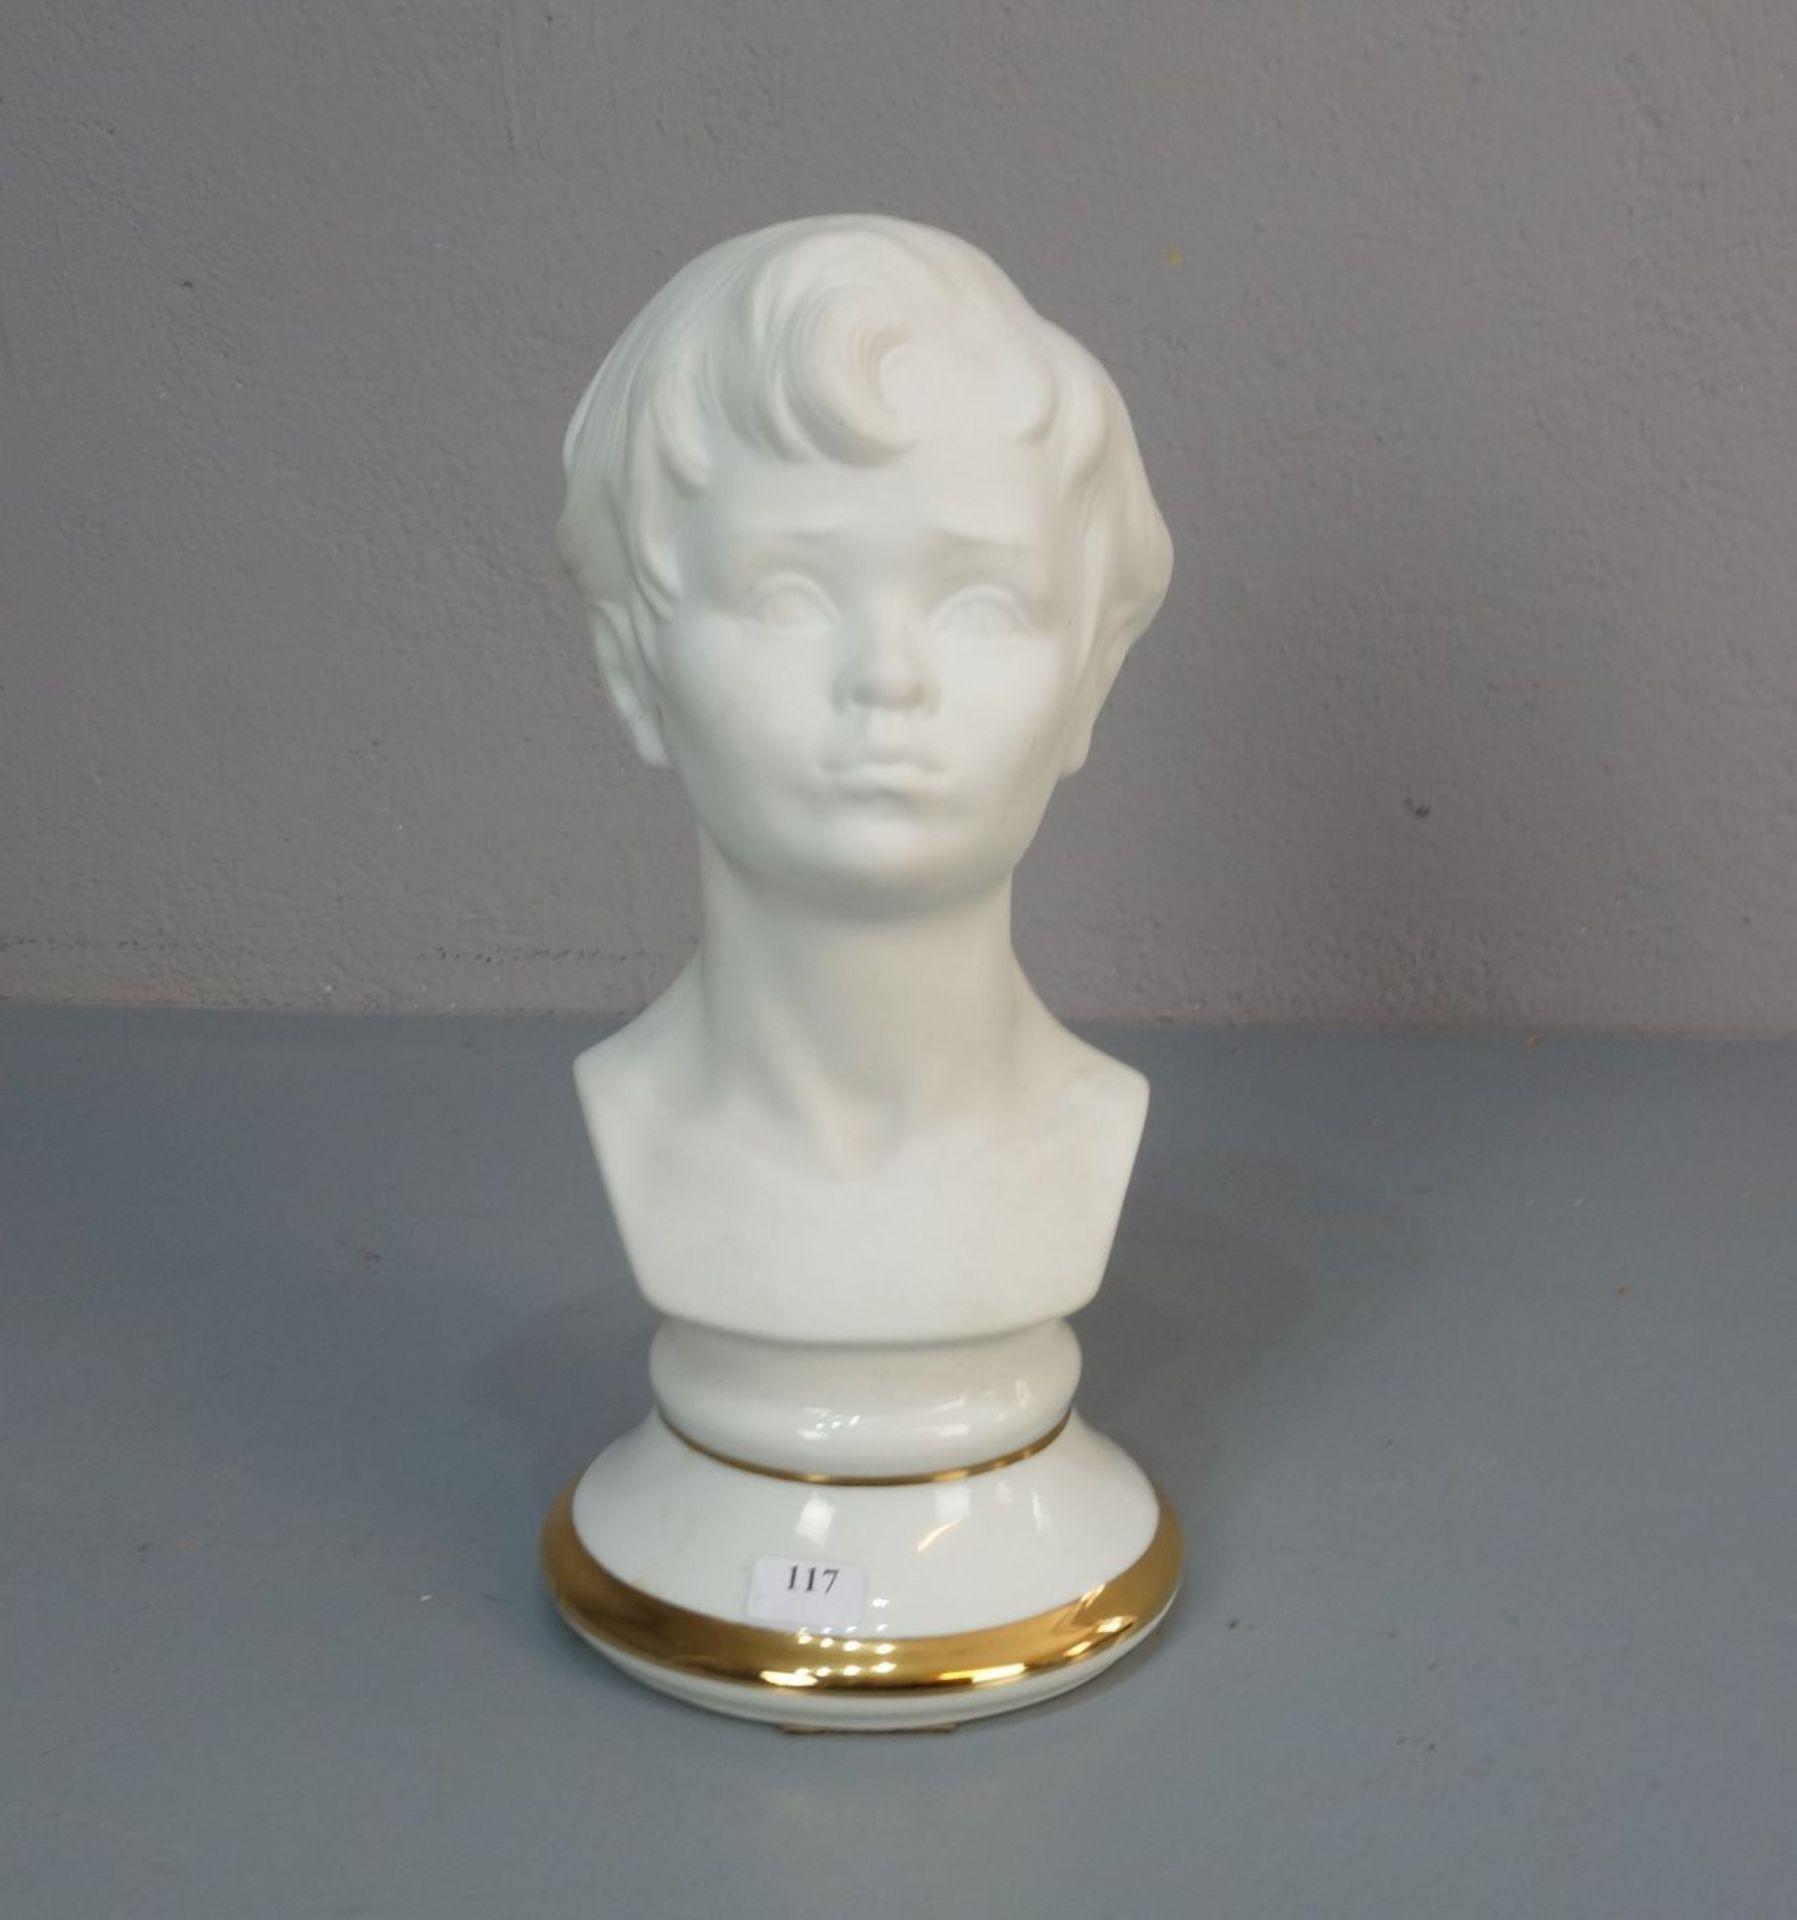 PORZELLANFIGUR / porcelain figure: "Büste eines jungen Mannes", Biskuitporzellan, Manufaktur "SANBO